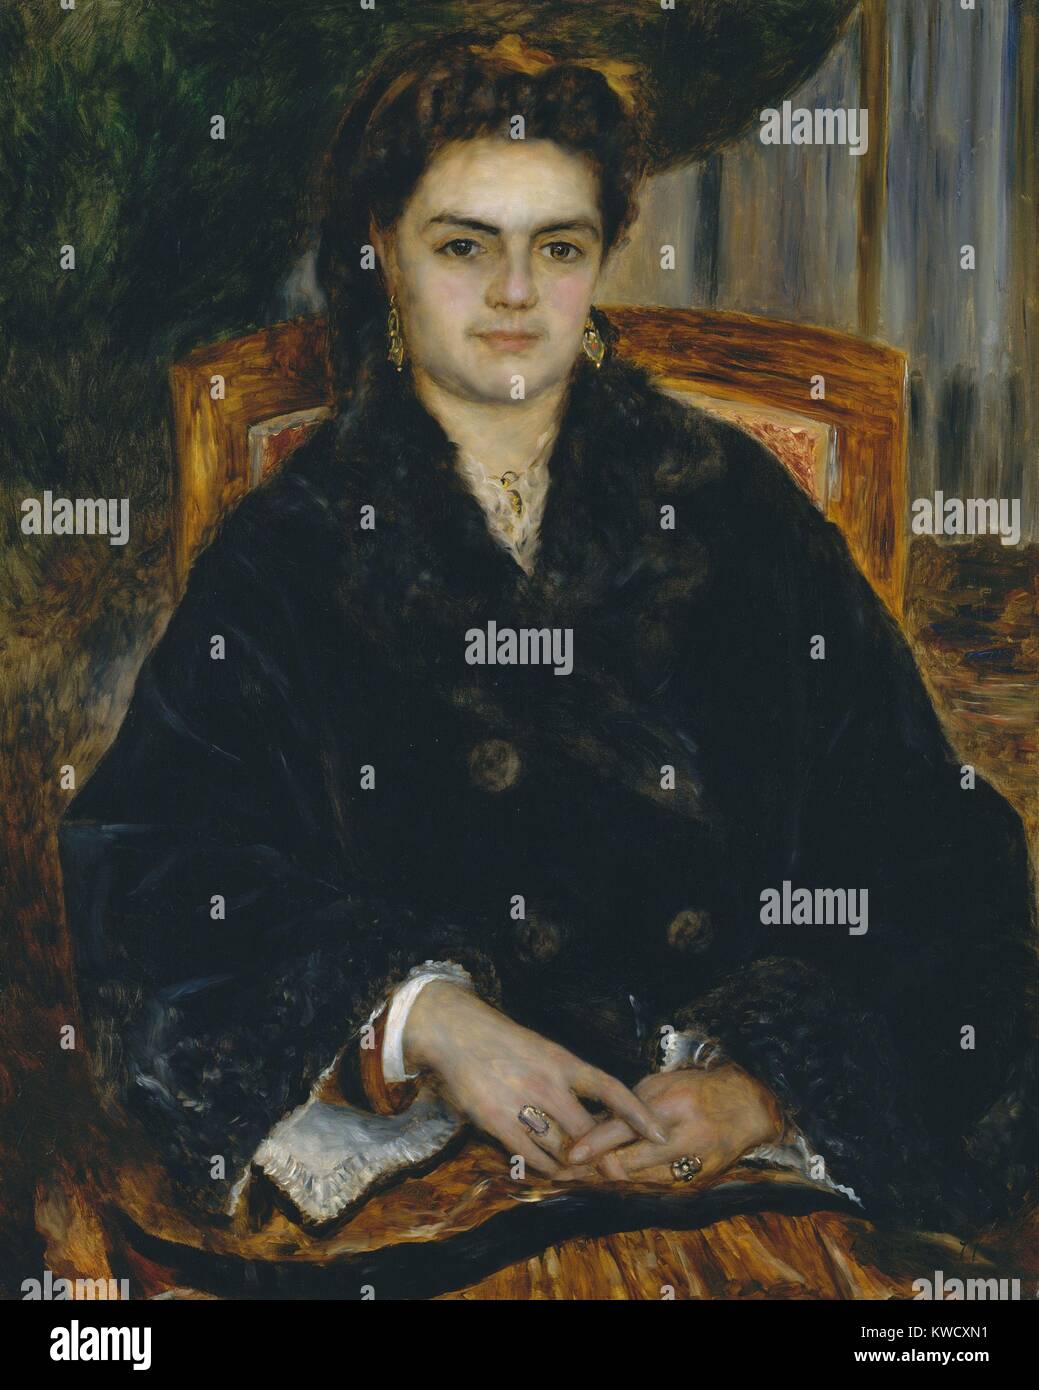 Madame Edouard Bernier, von Auguste Renoir, 1871, französischer impressionistischer Malerei, Öl auf Leinwand. Die sitter war die Frau des Kommandanten von Renoirs Regiment während des Deutsch-Französischen Krieges (1870-71) (BSLOC 2017 3 69) Stockfoto